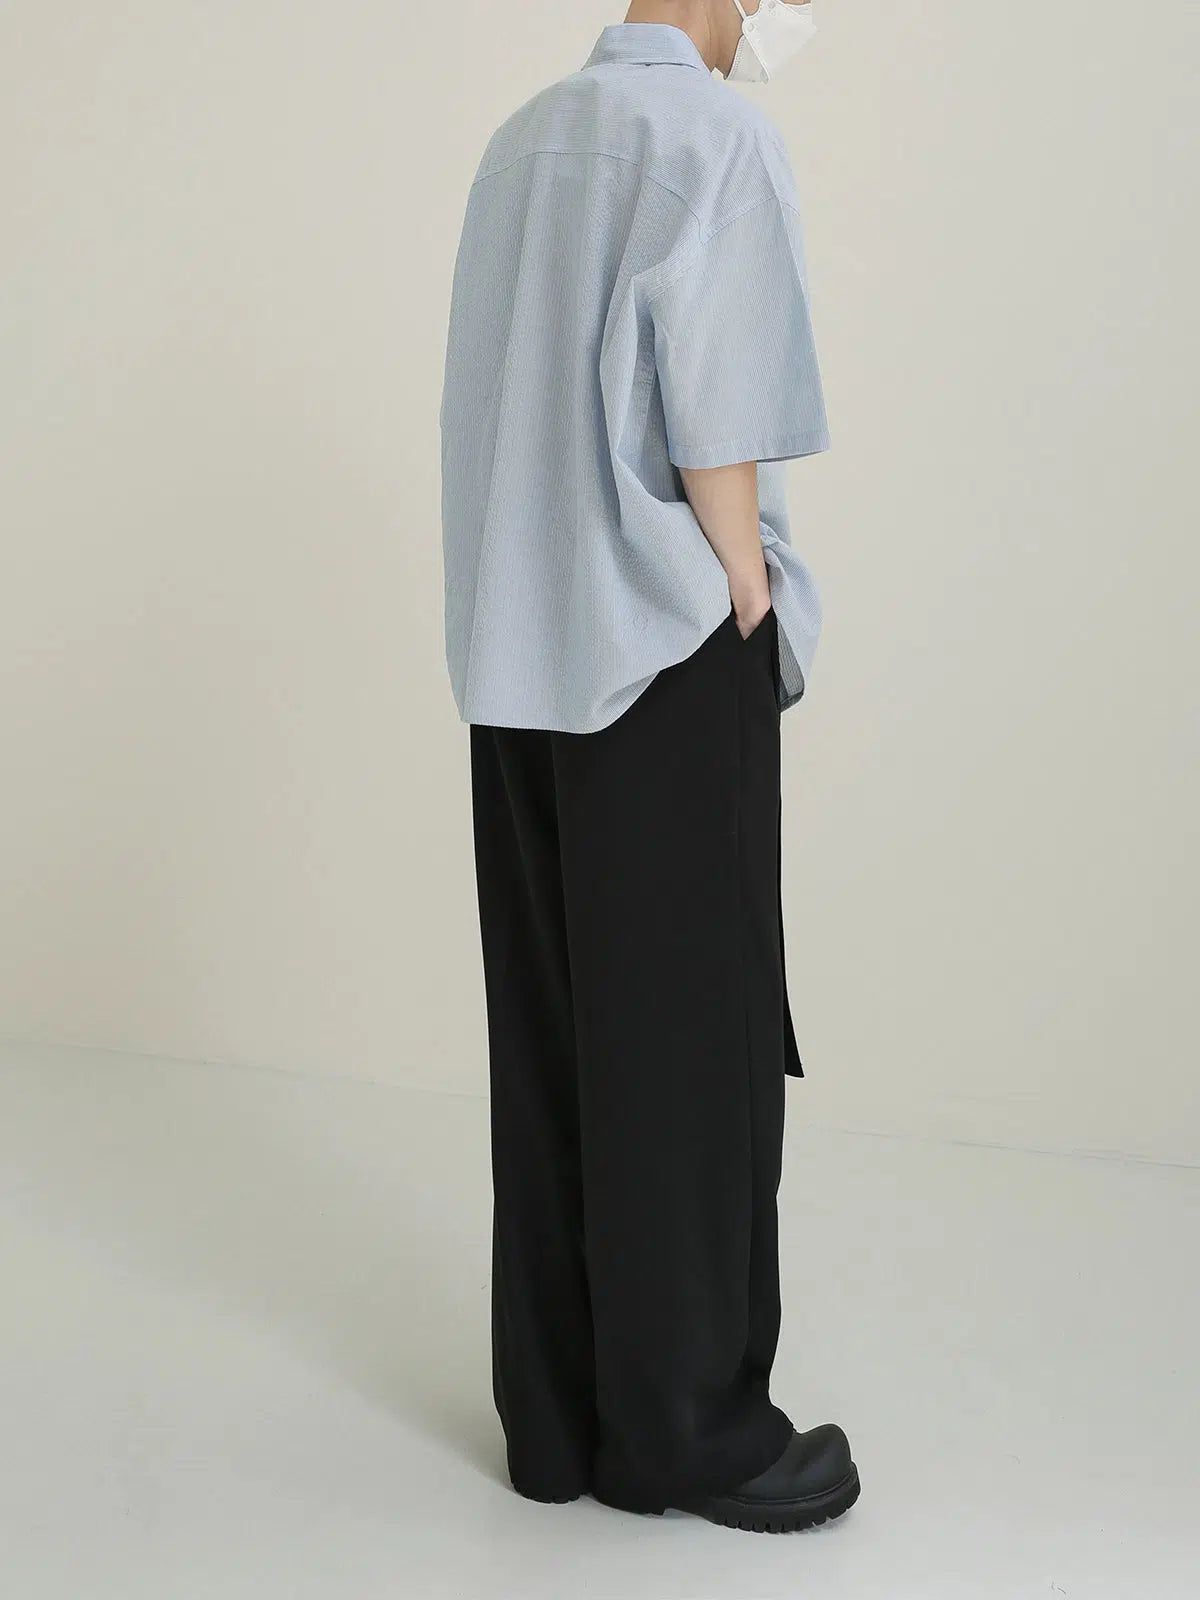 Zhou Drop Shoulder Textured Shirt-korean-fashion-Shirt-Zhou's Closet-OH Garments